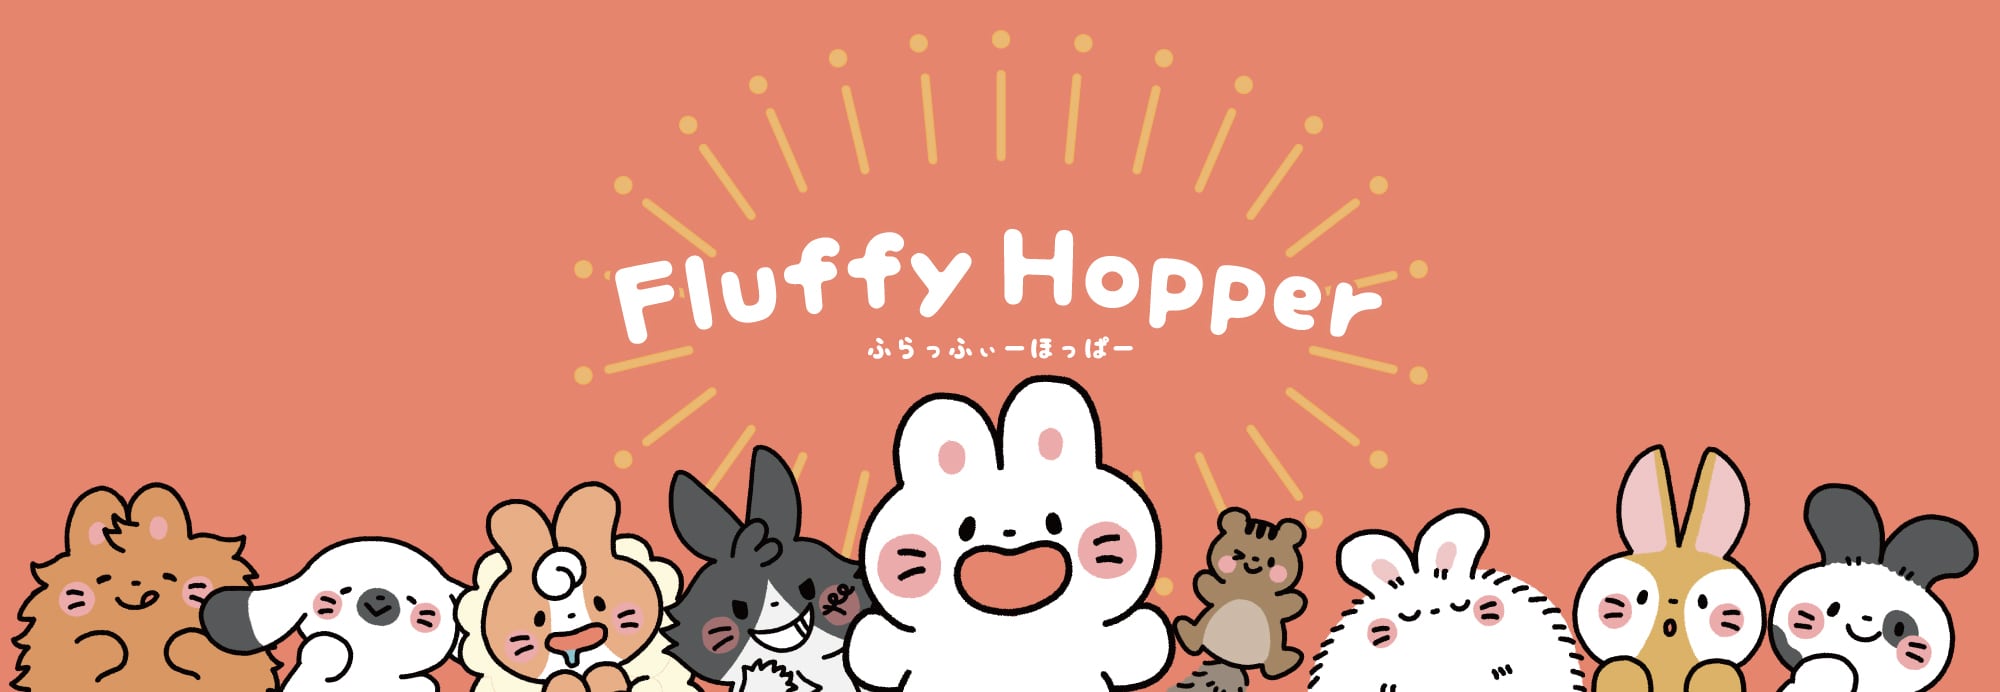 fluffyhopper